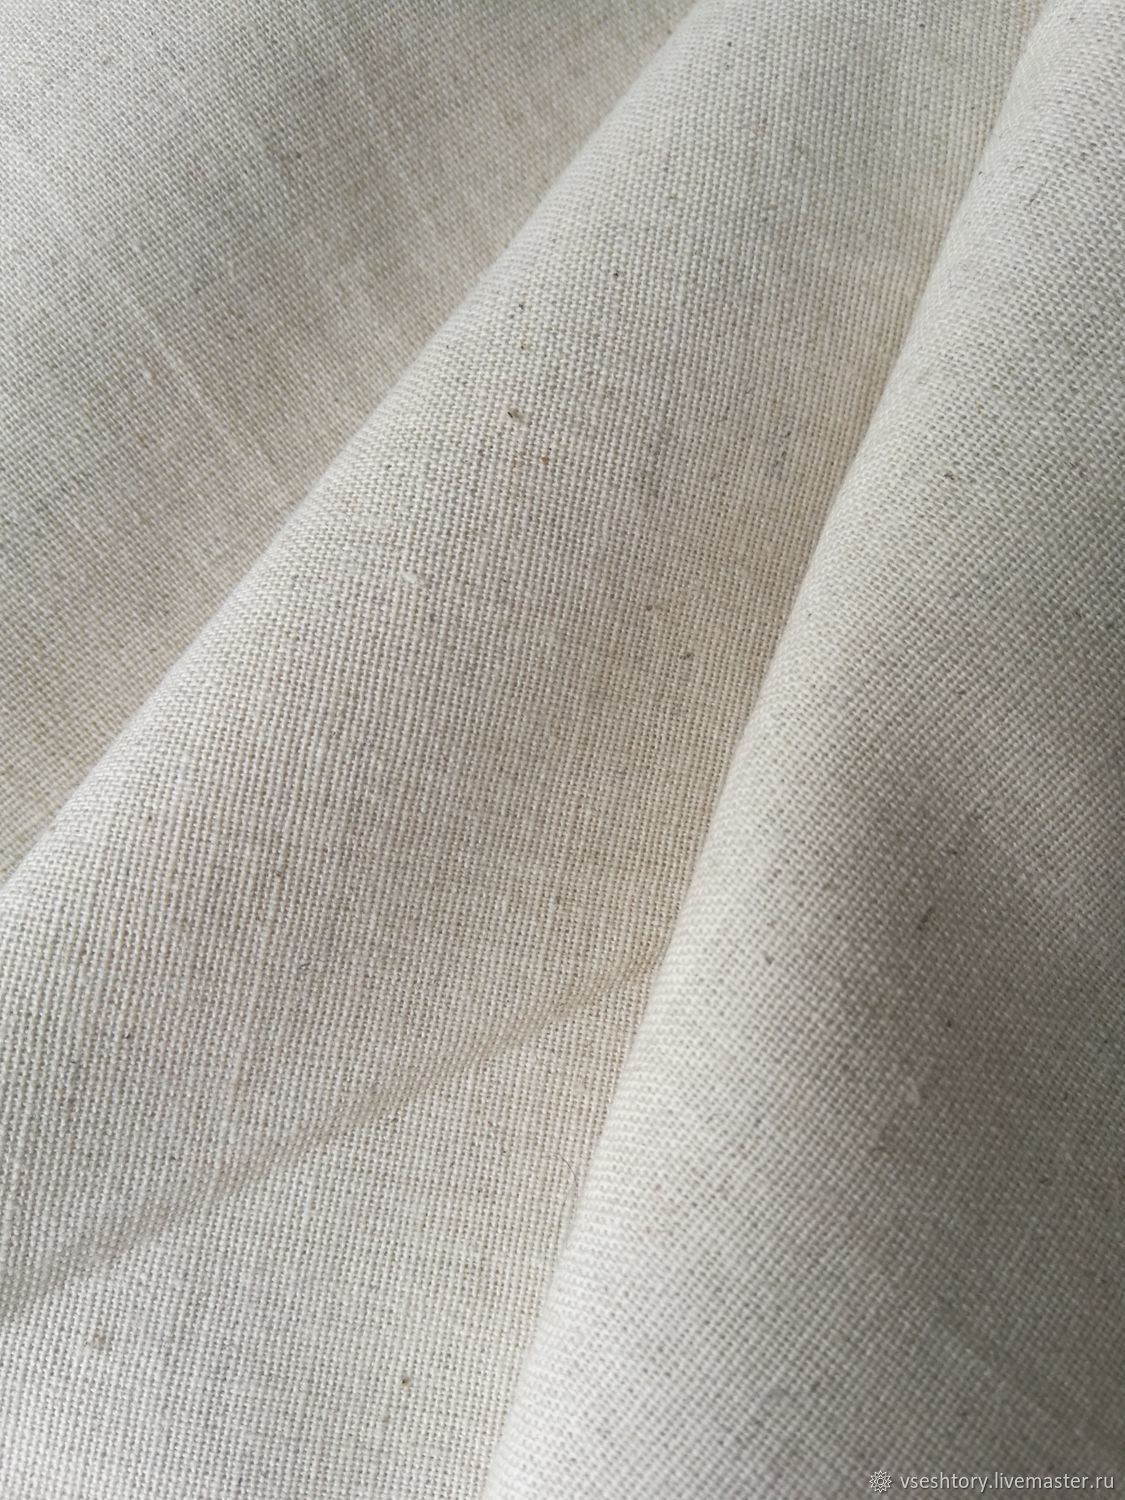 Ткань Apollo Linen